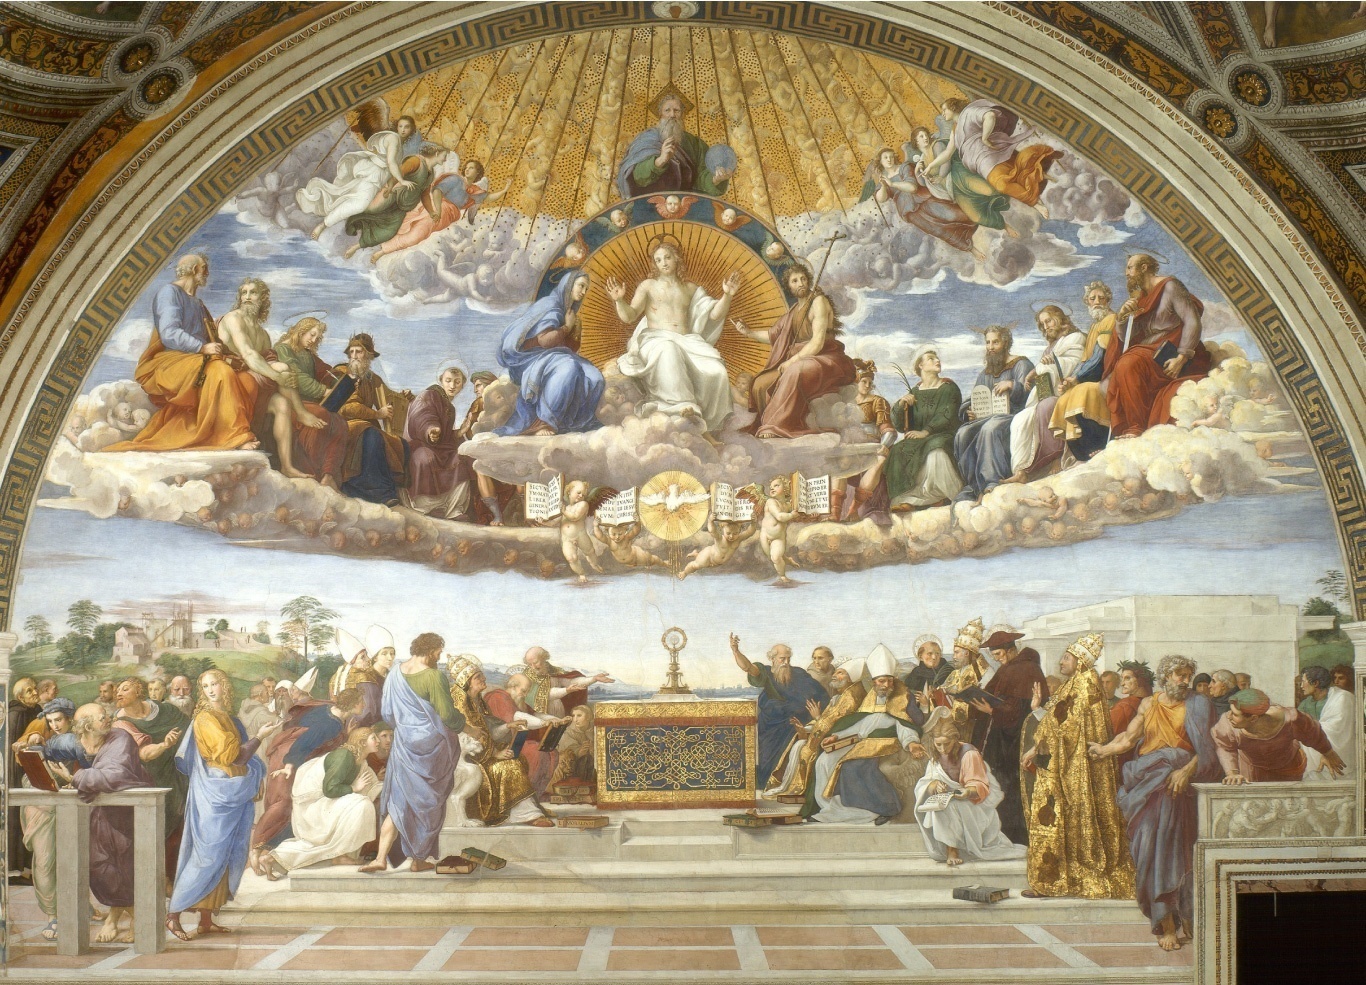 La Dispute du Saint Sacrement, par Rafael, 1509-1510. (Photo : Wikimedia Commons)